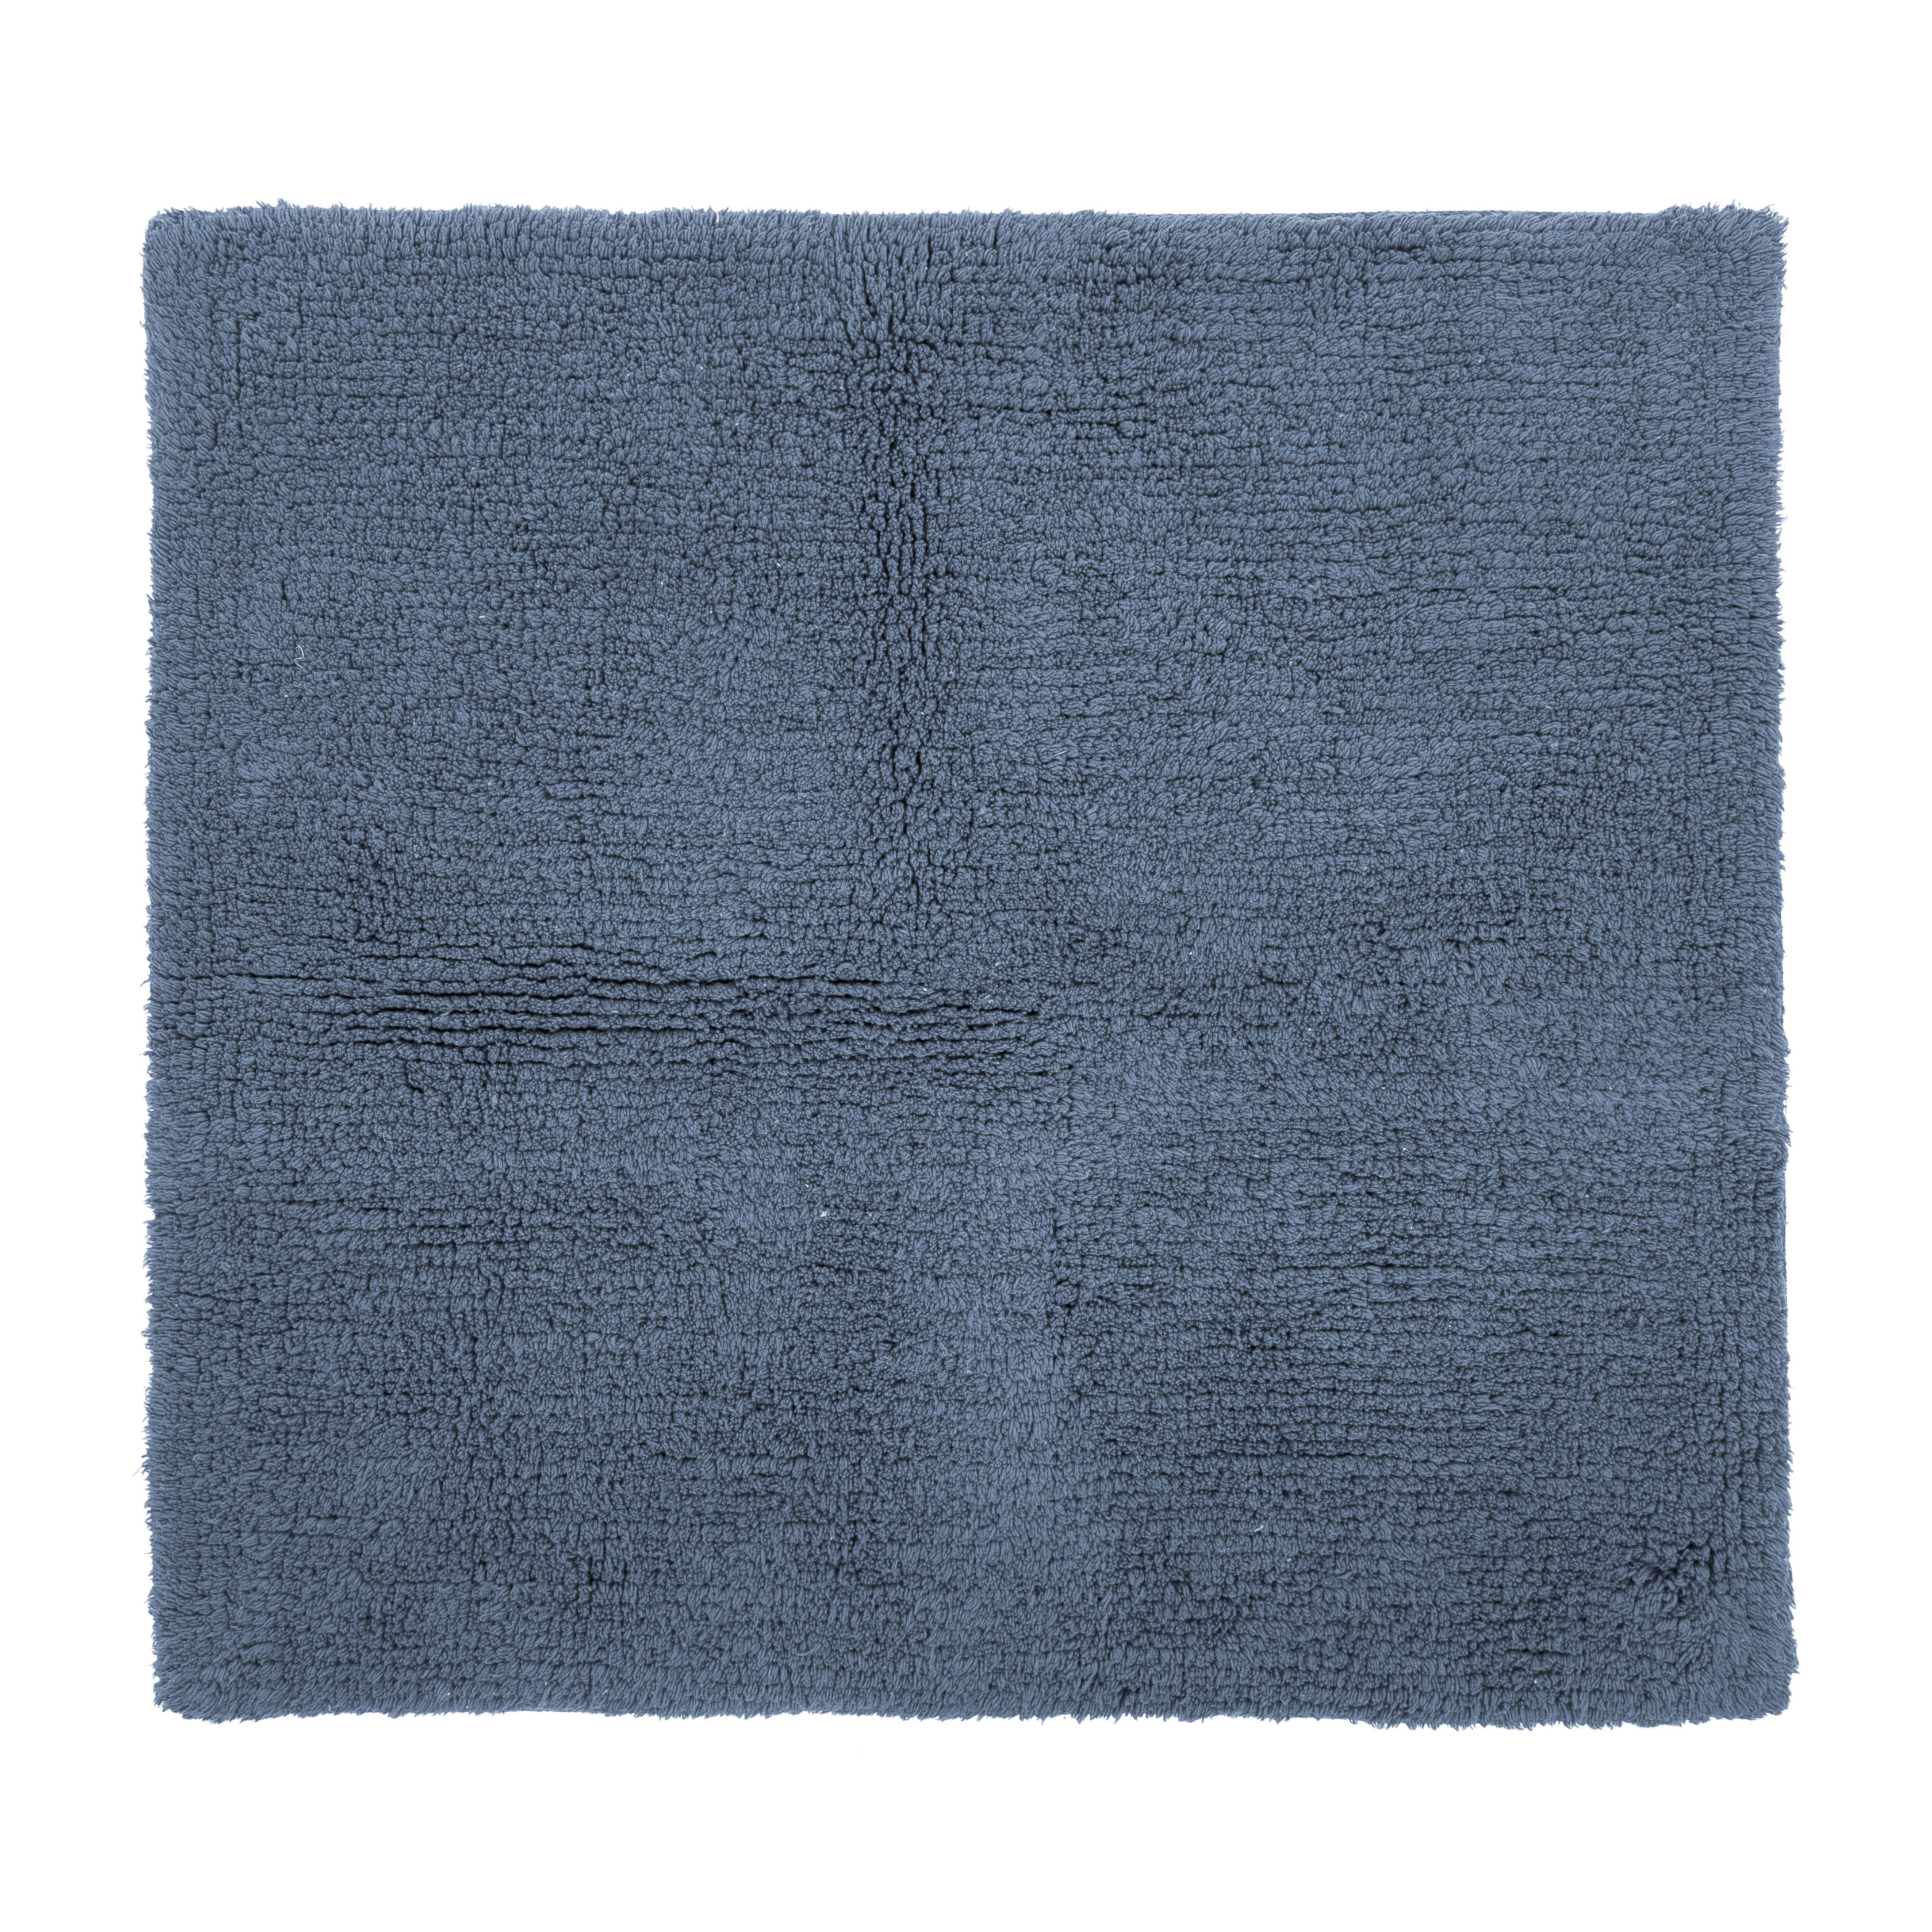 RIVA tapis de bain - coton antidérapant, 60x60cm, stone blue